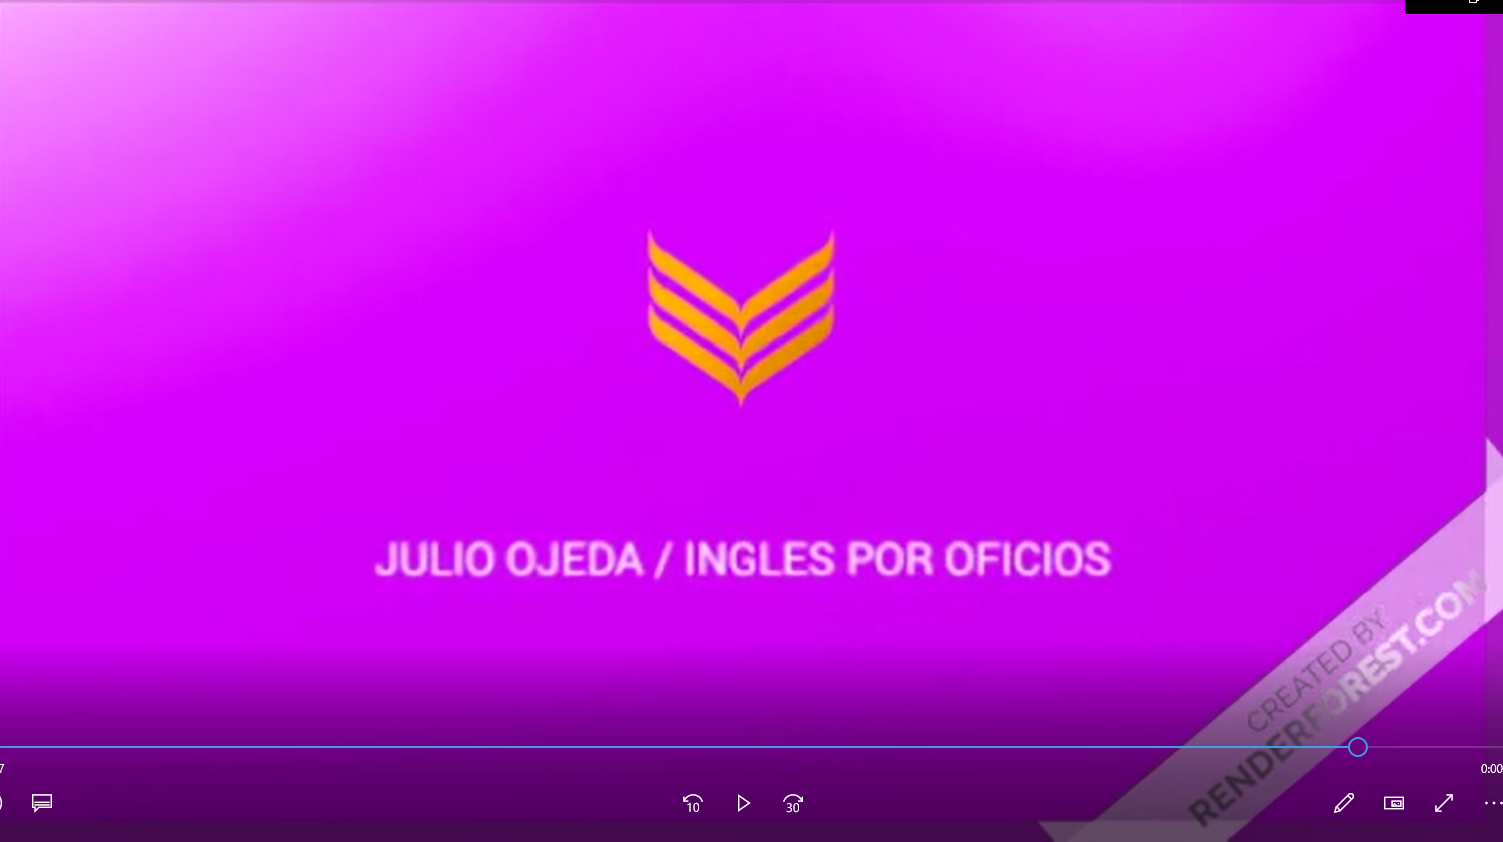 INGLES POR OFICIOS - VY

JULIO OJEDA / INGLES POR OFICIOS